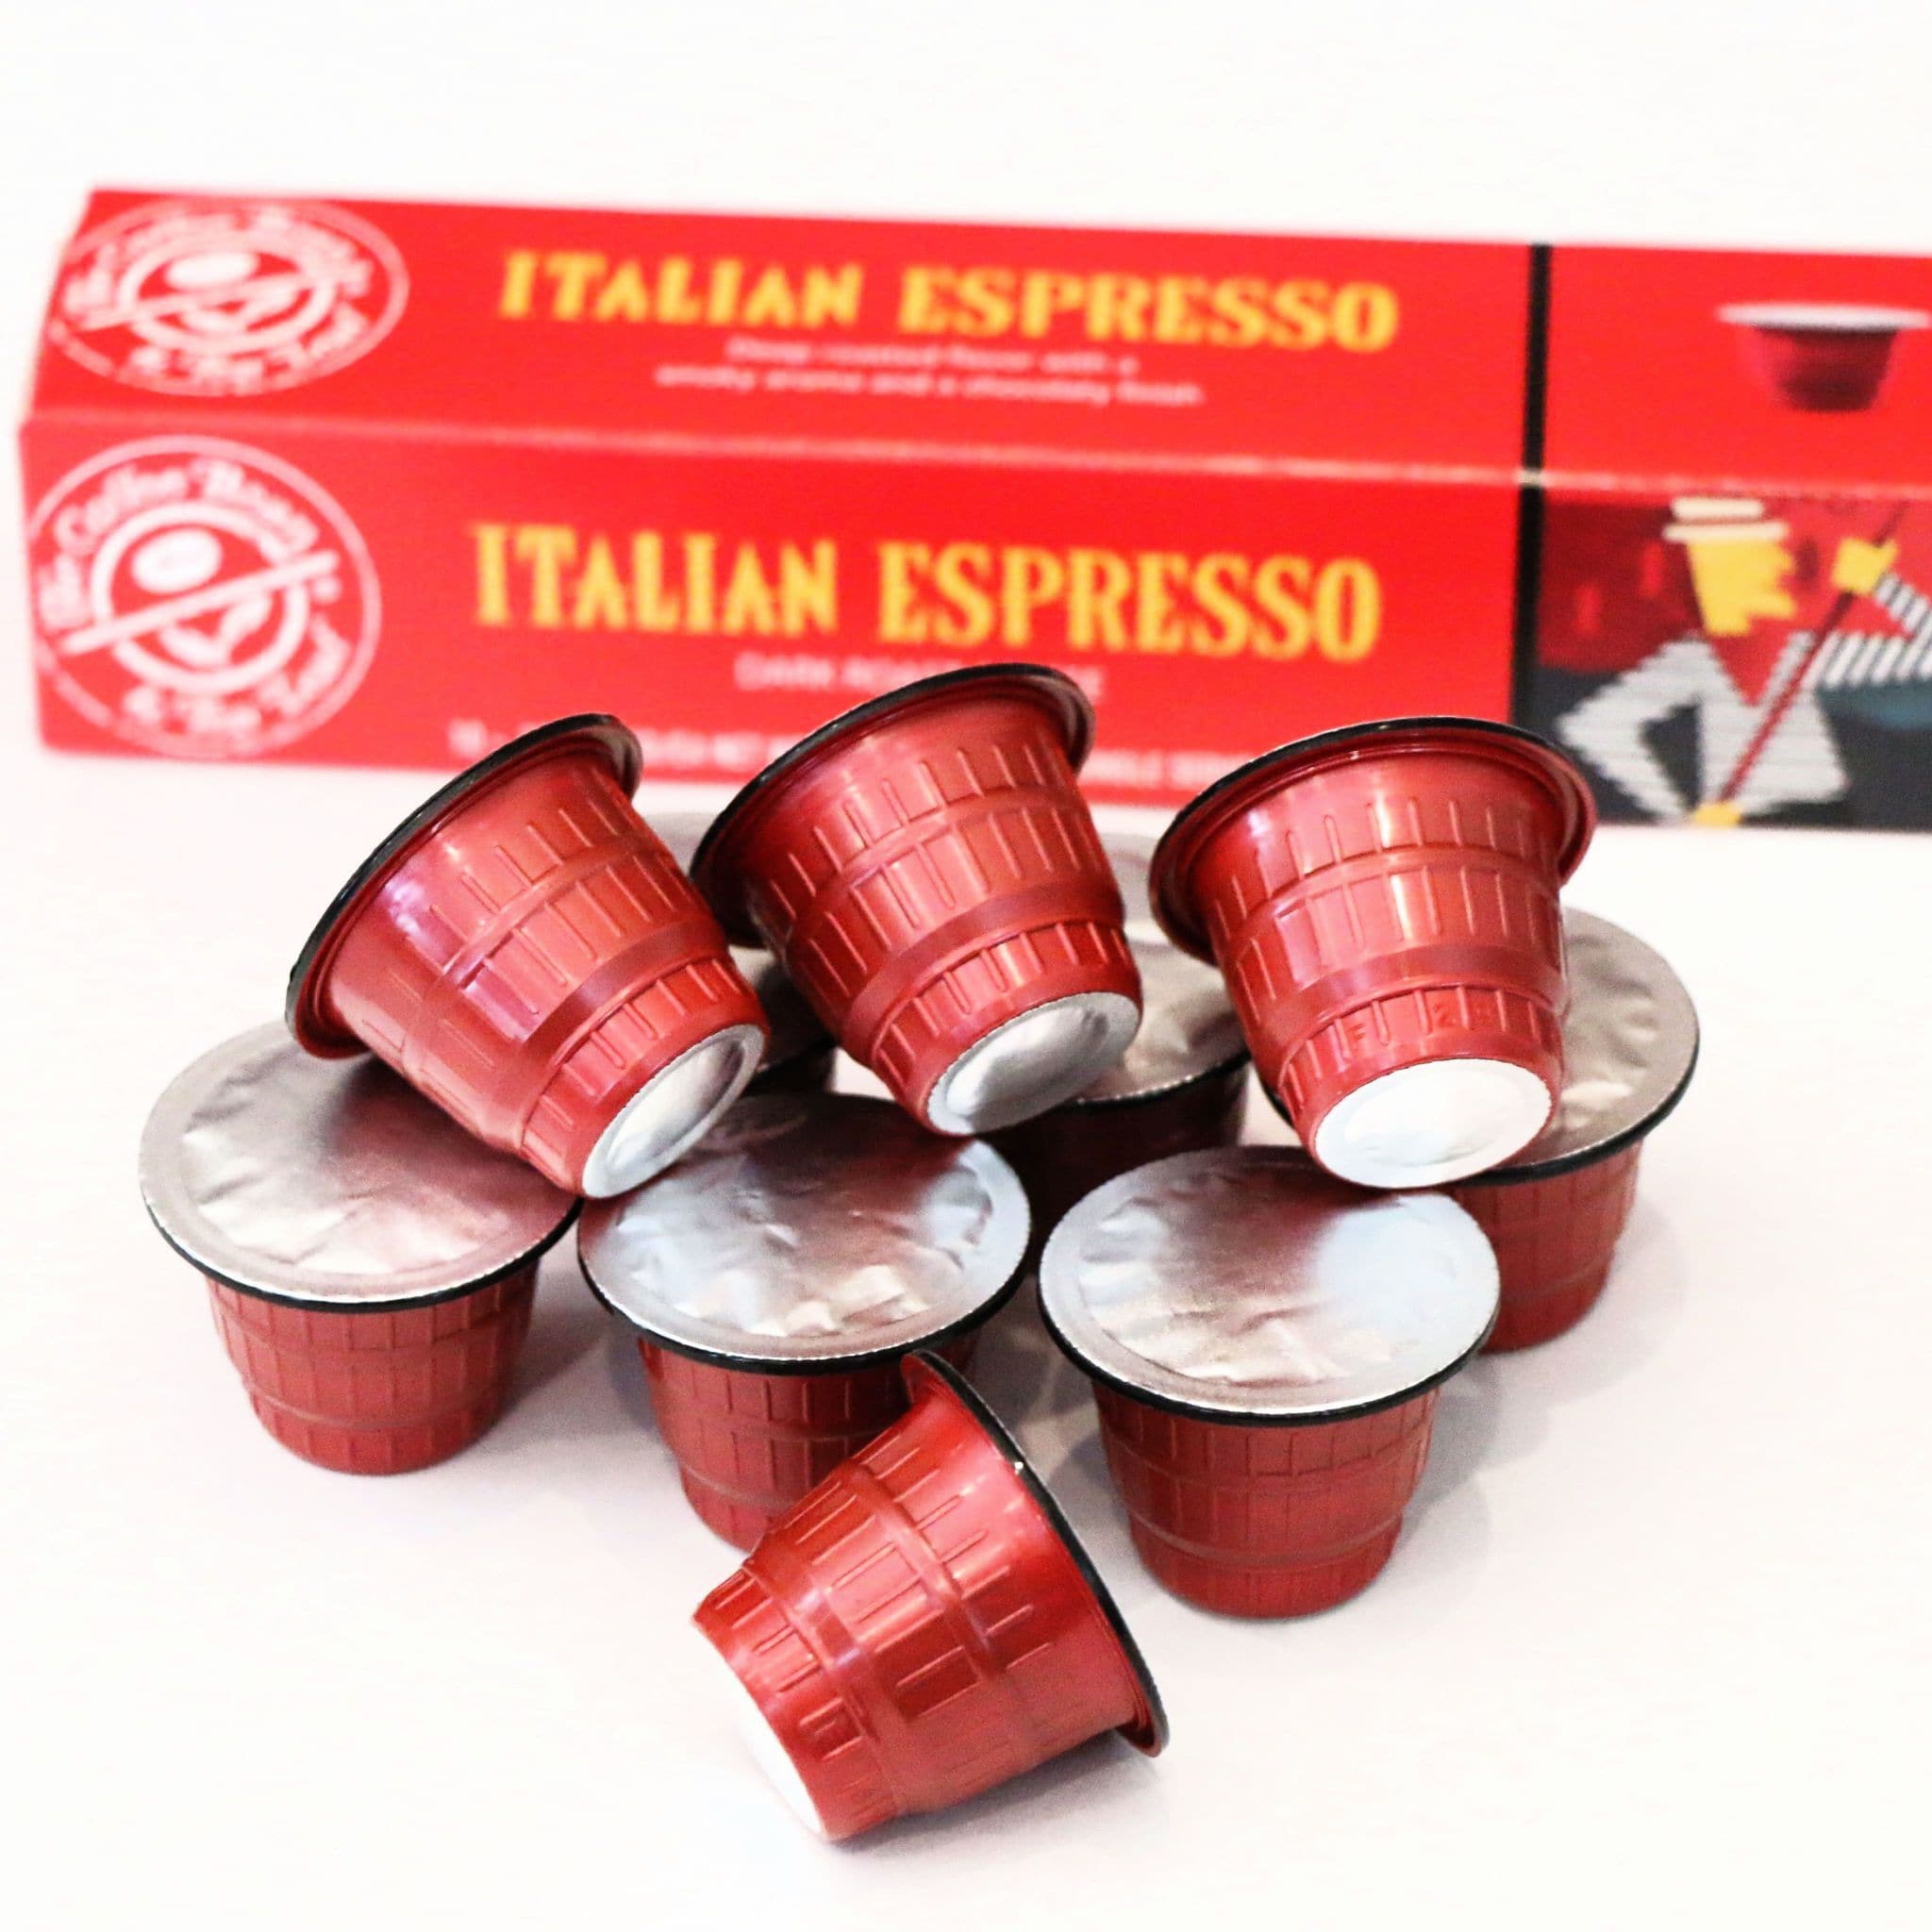 Nespresso Special Reserve Box Review